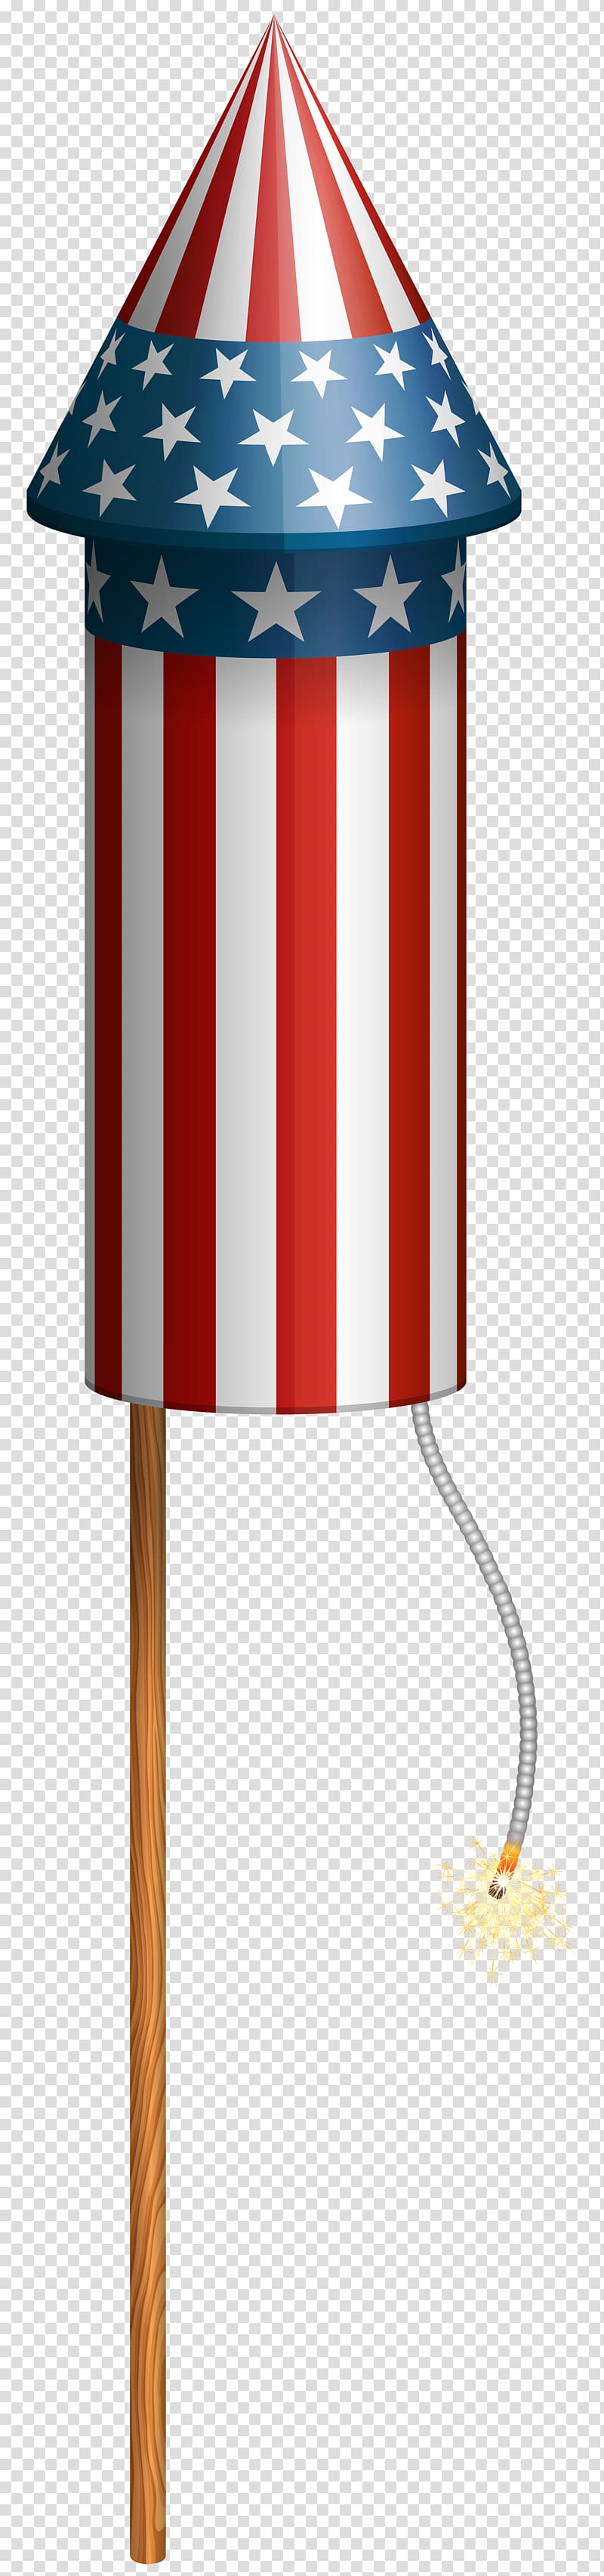 USA flag-themed fire cracker, Bottle rocket Fireworks Paper Flight, USA Sparkler transparent background PNG clipart